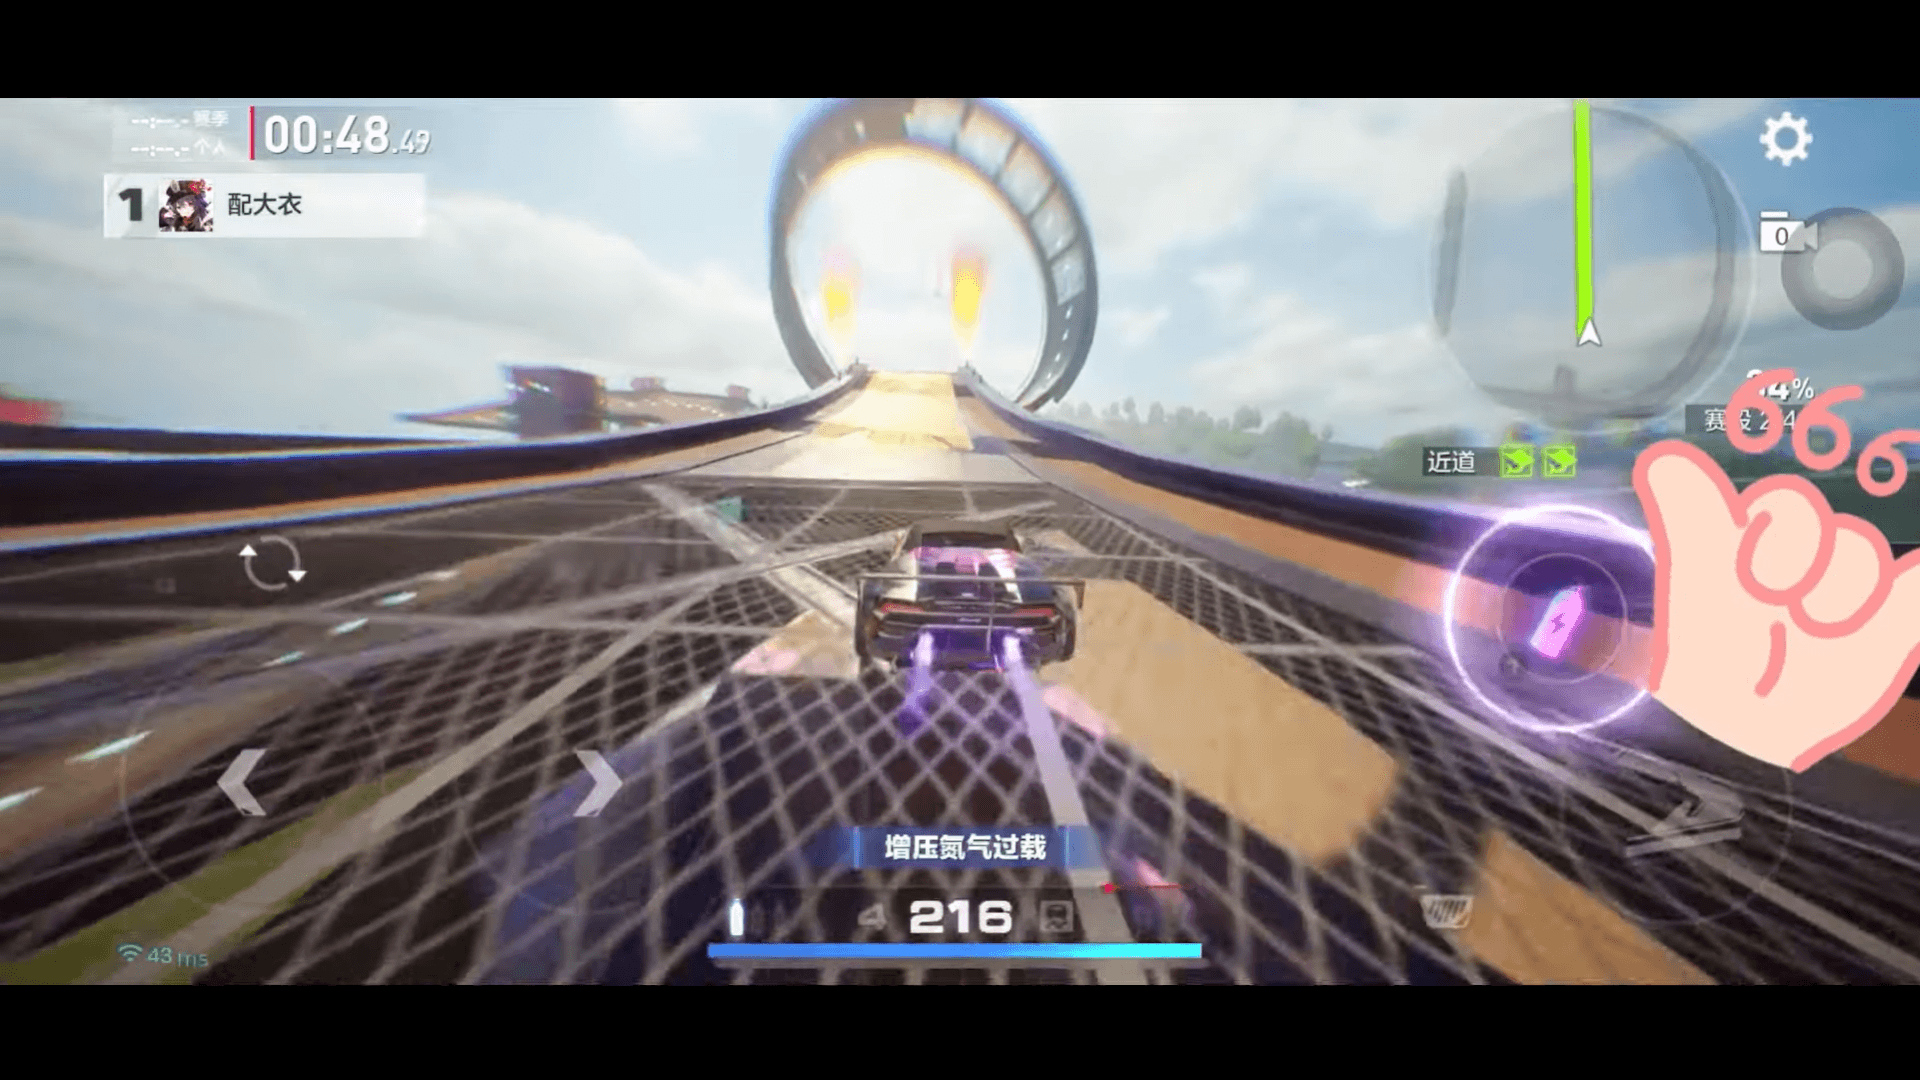 Геймплей Need For Speed ​​Mobile просочился в сеть: вот как он выглядит